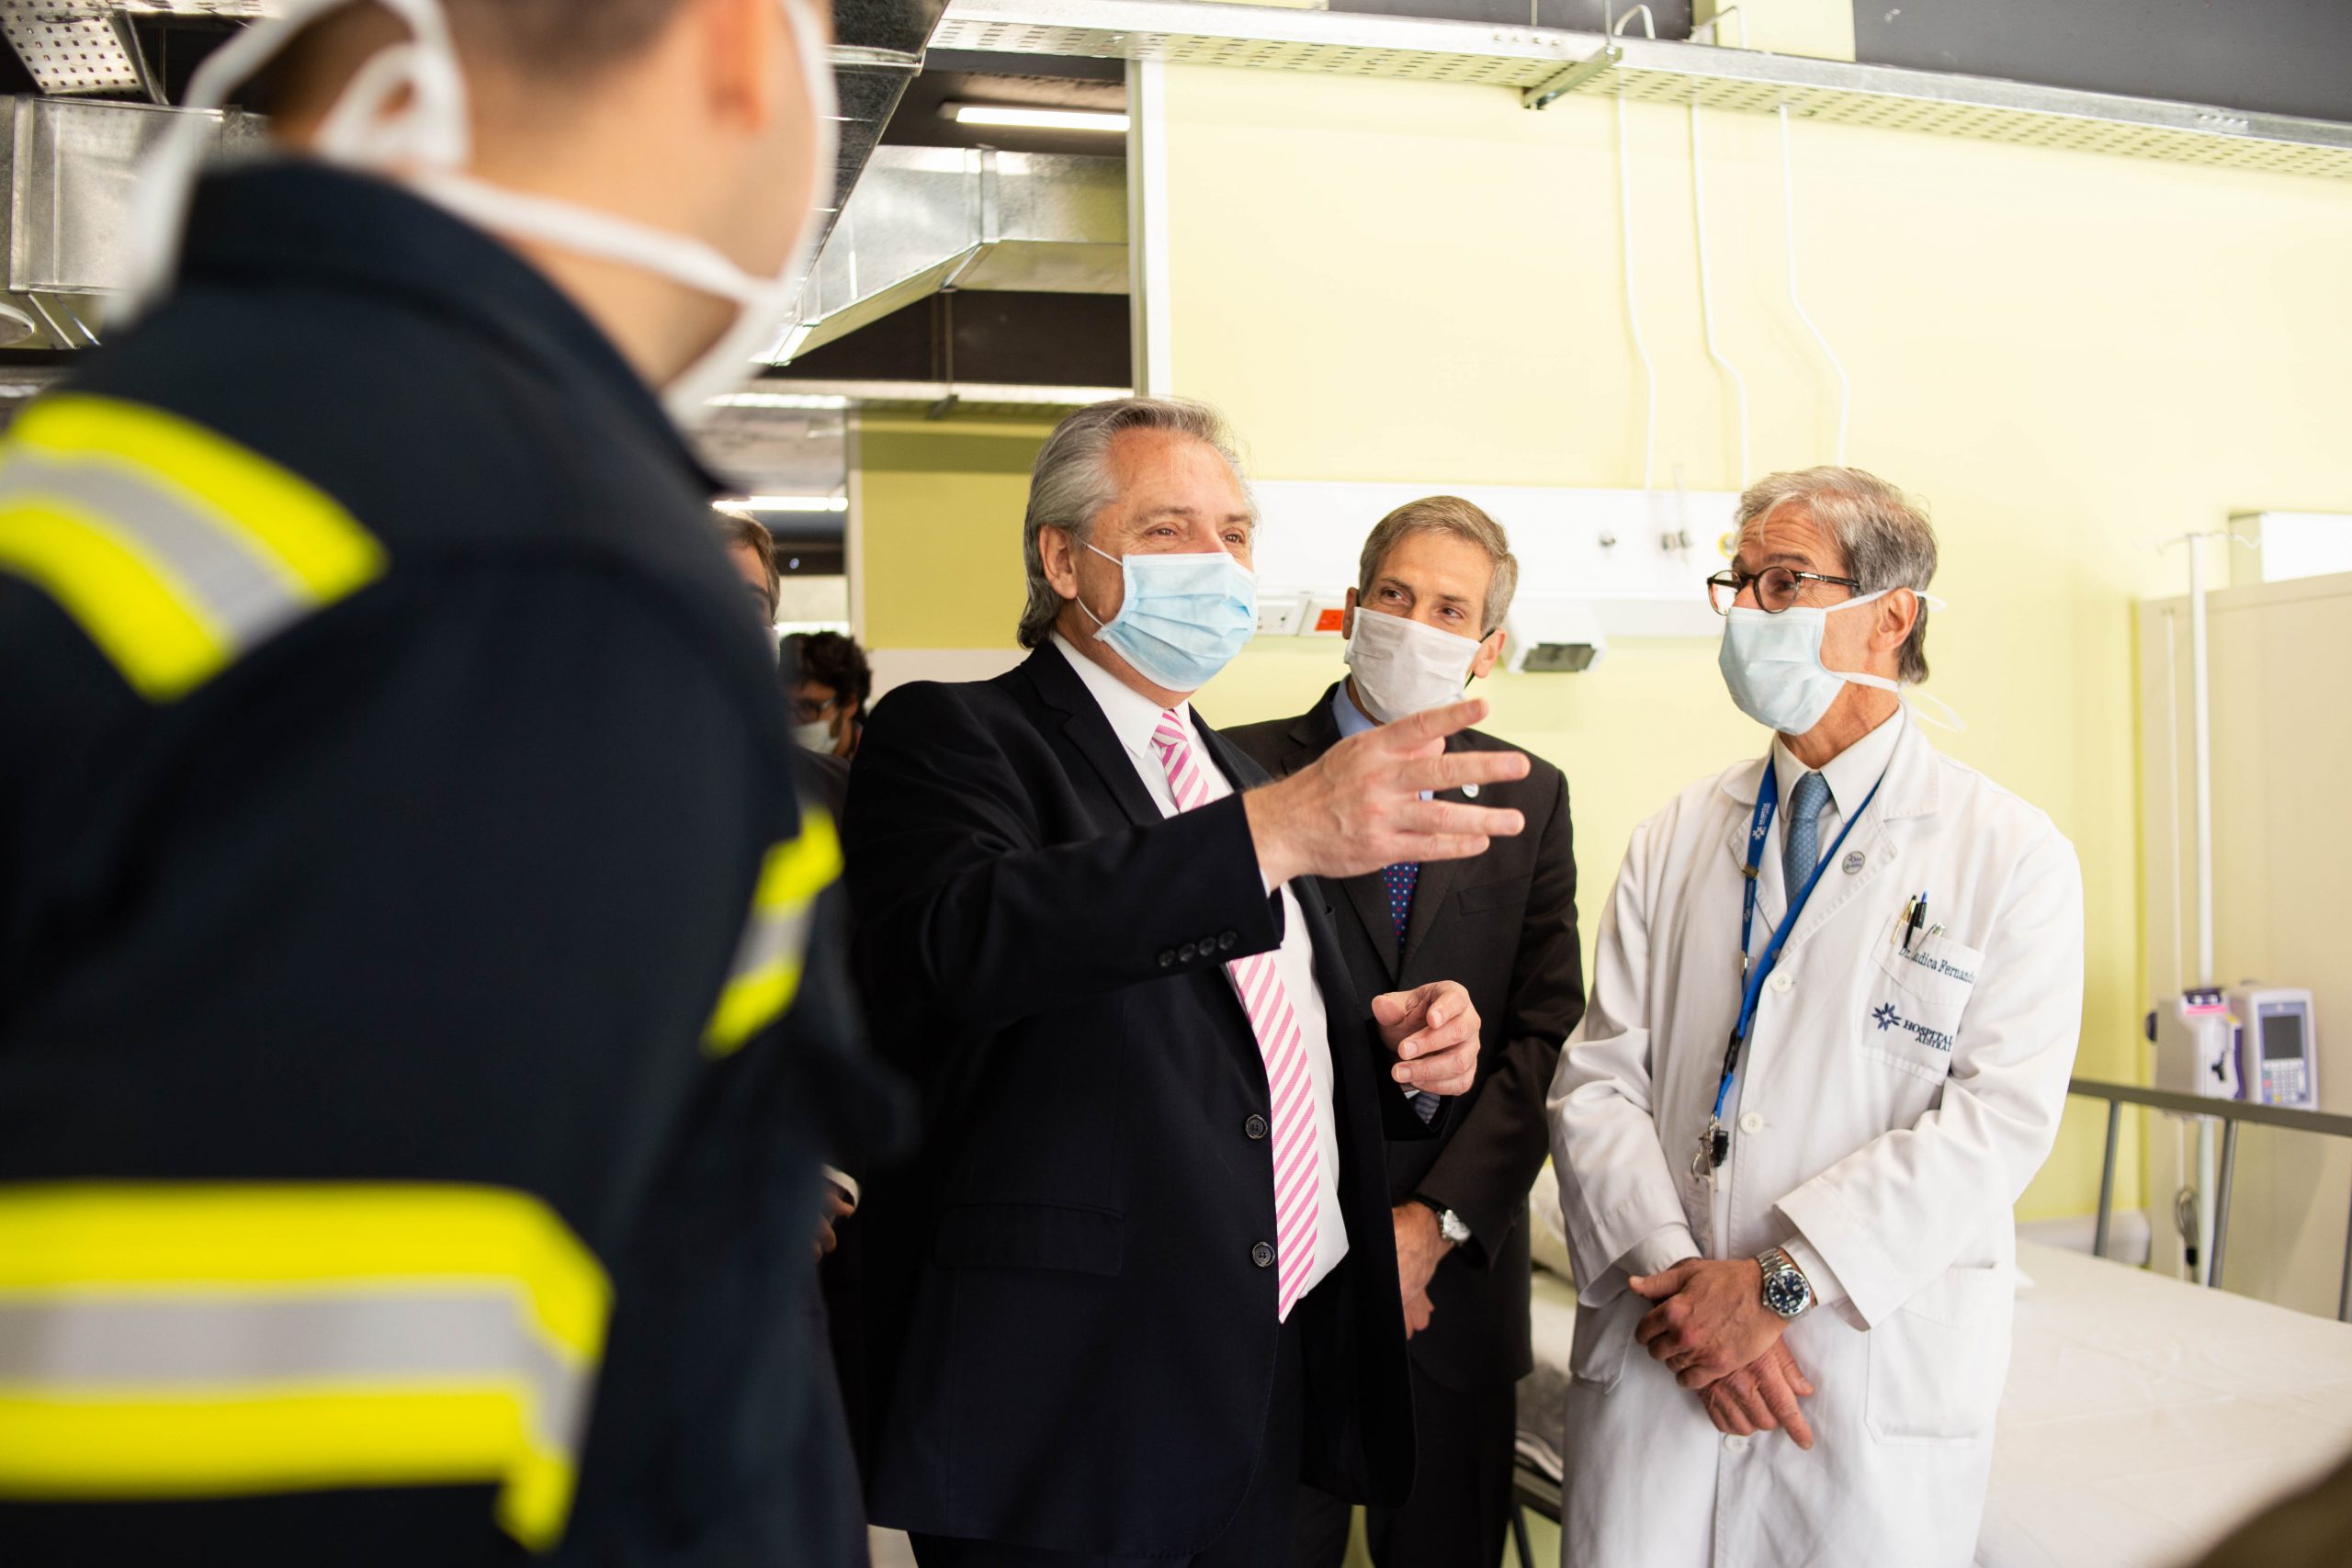 El Presidente participa mañana de la apertura del hospital “René Favaloro” en La Matanza para pacientes con COVID-19